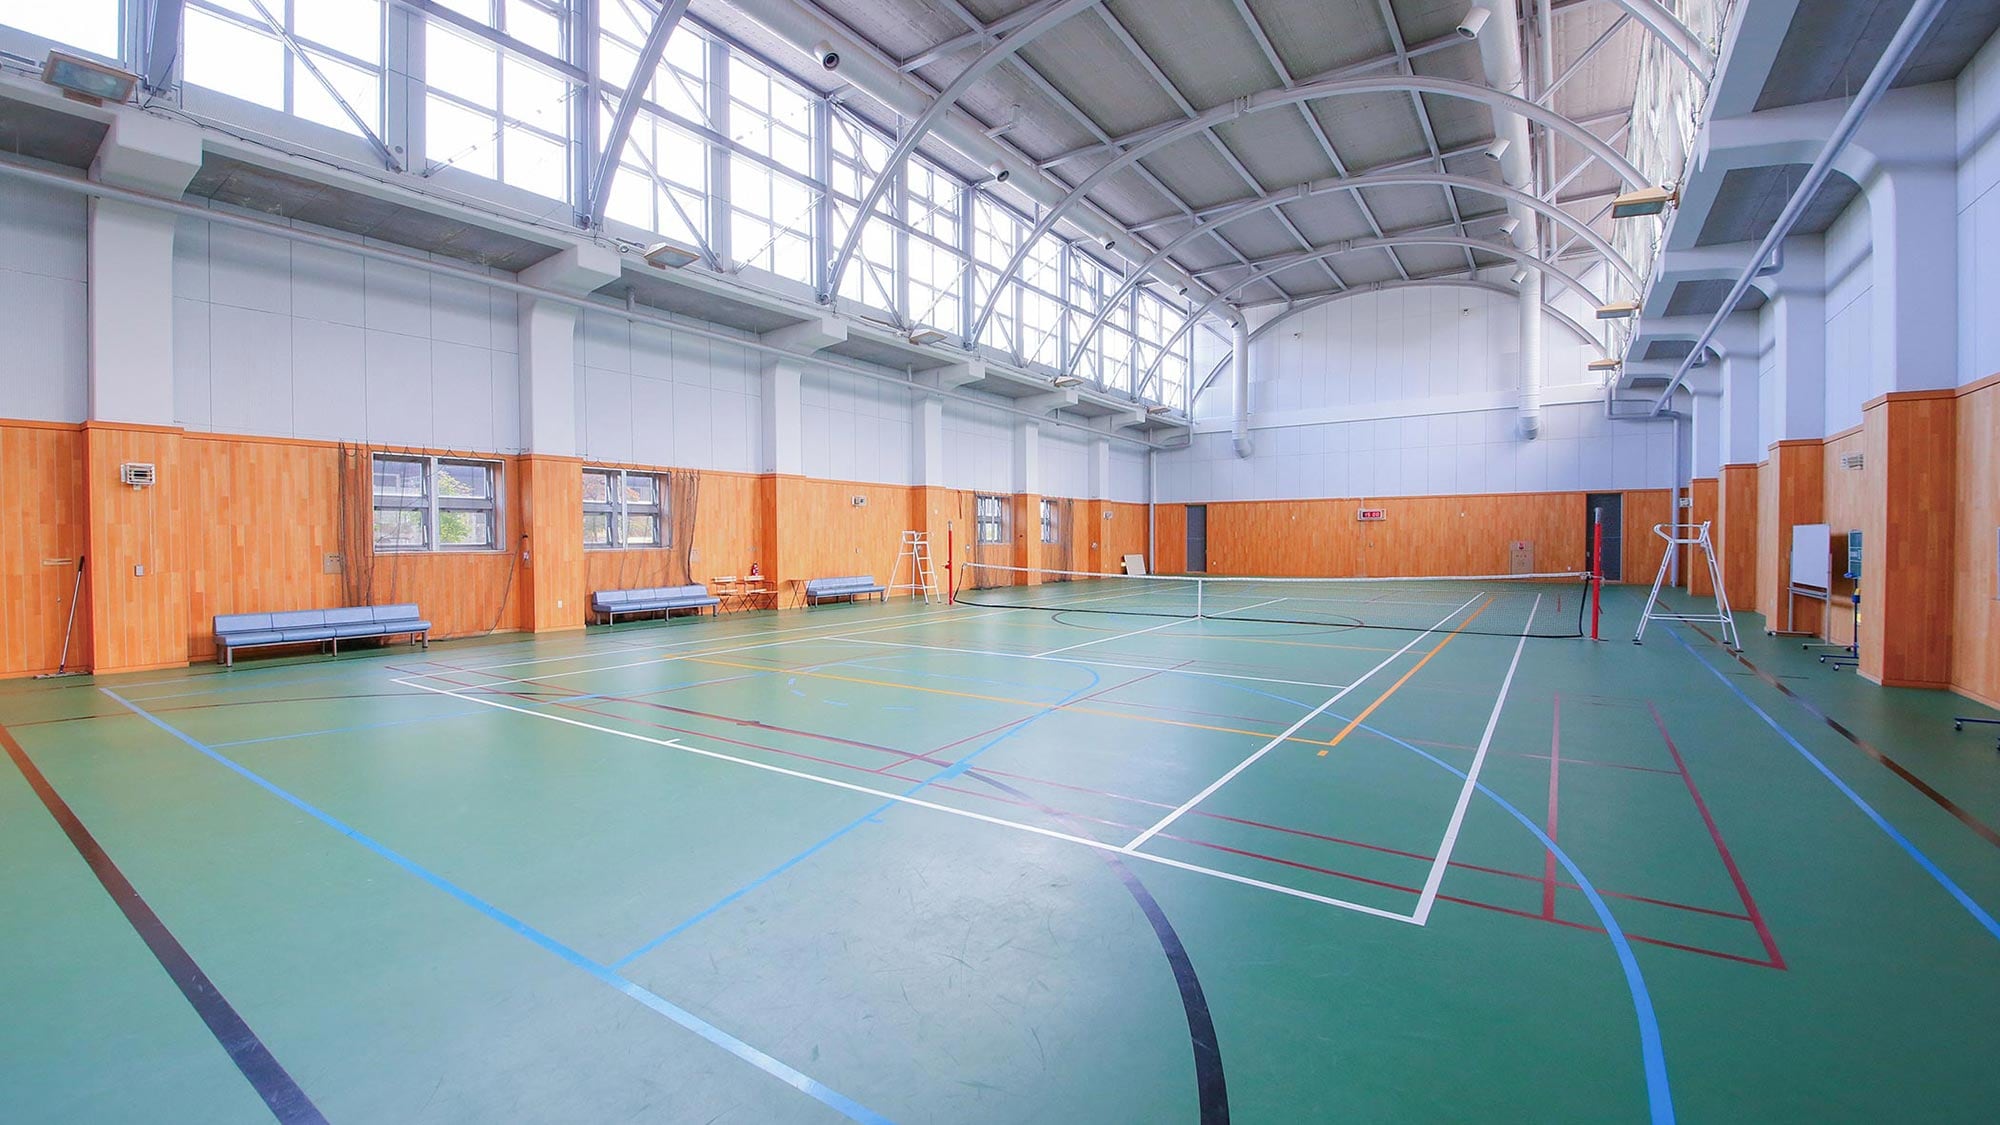 Ada lapangan gratis dalam ruangan untuk tenis dan bola basket. Anda dapat menggunakannya seharga 1.000 yen (tidak termasuk pajak) per jam.